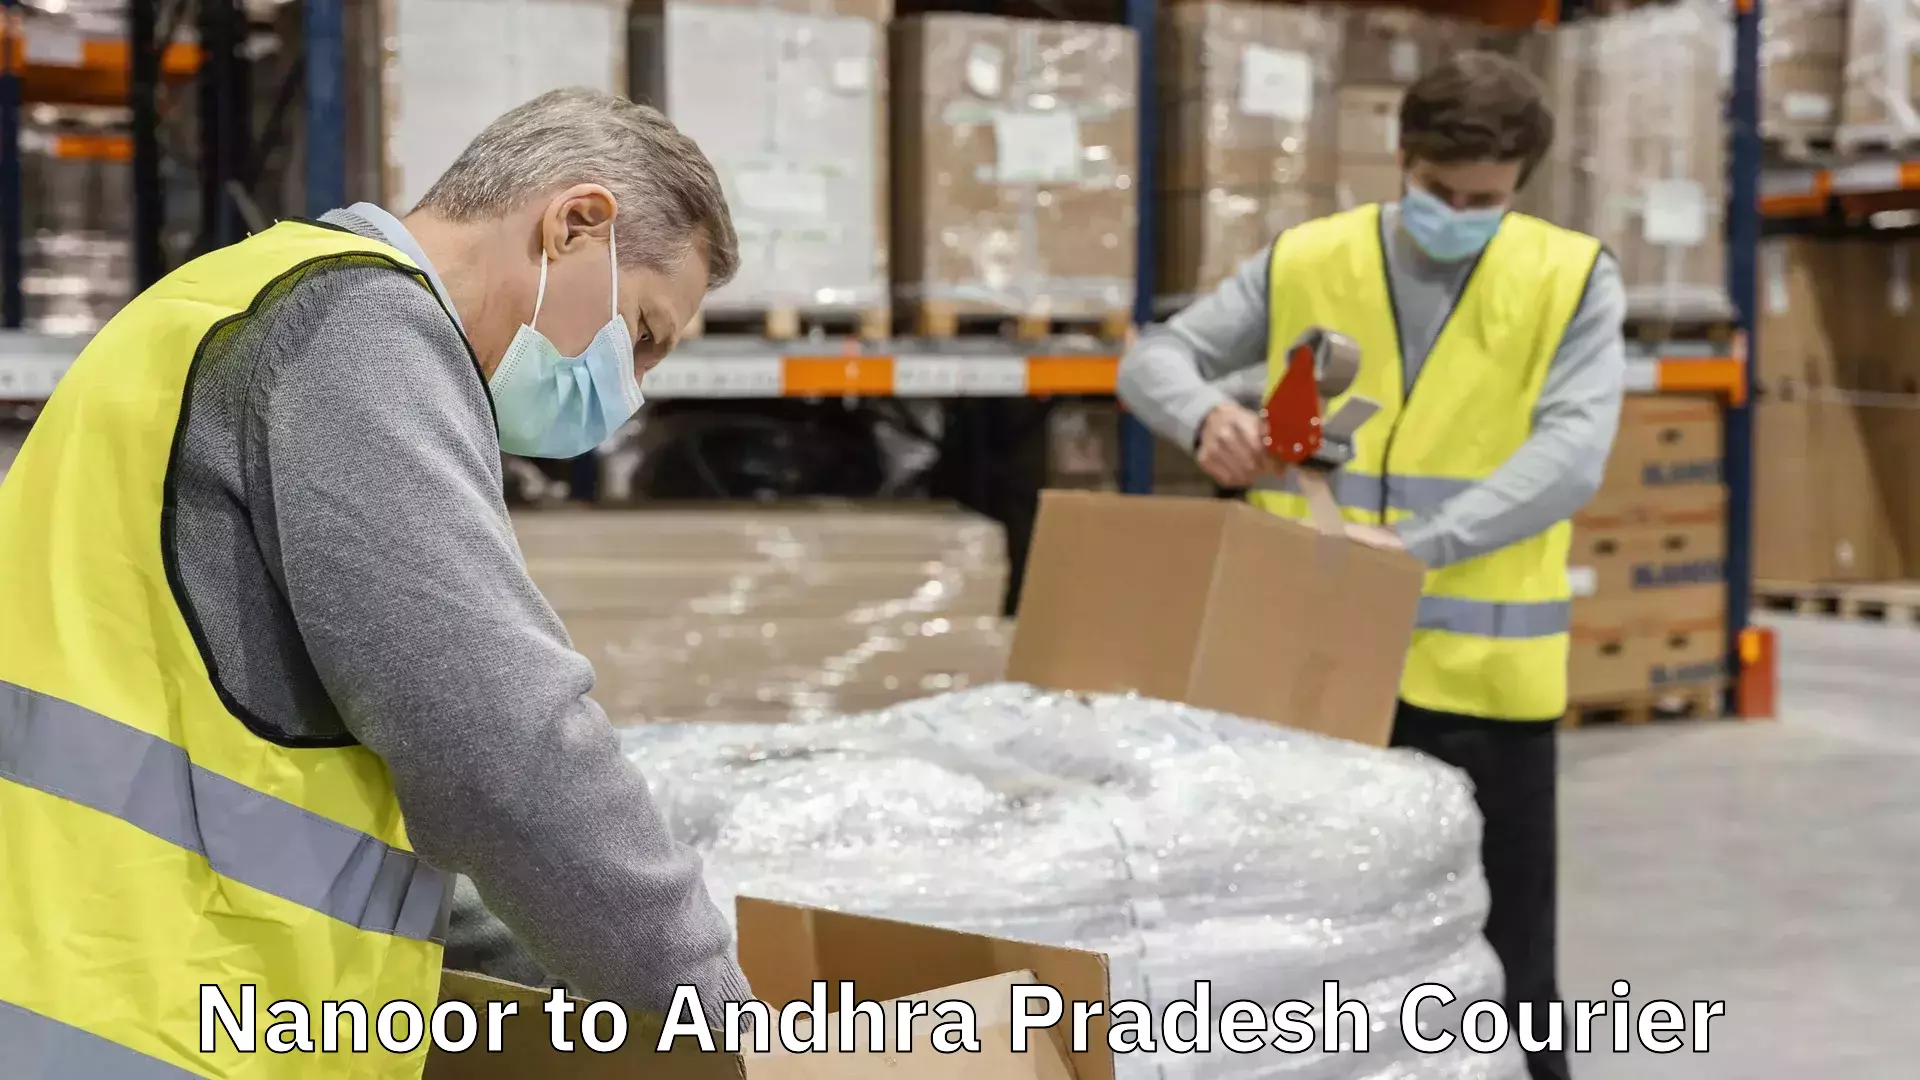 Delivery service partnership Nanoor to Andhra Pradesh